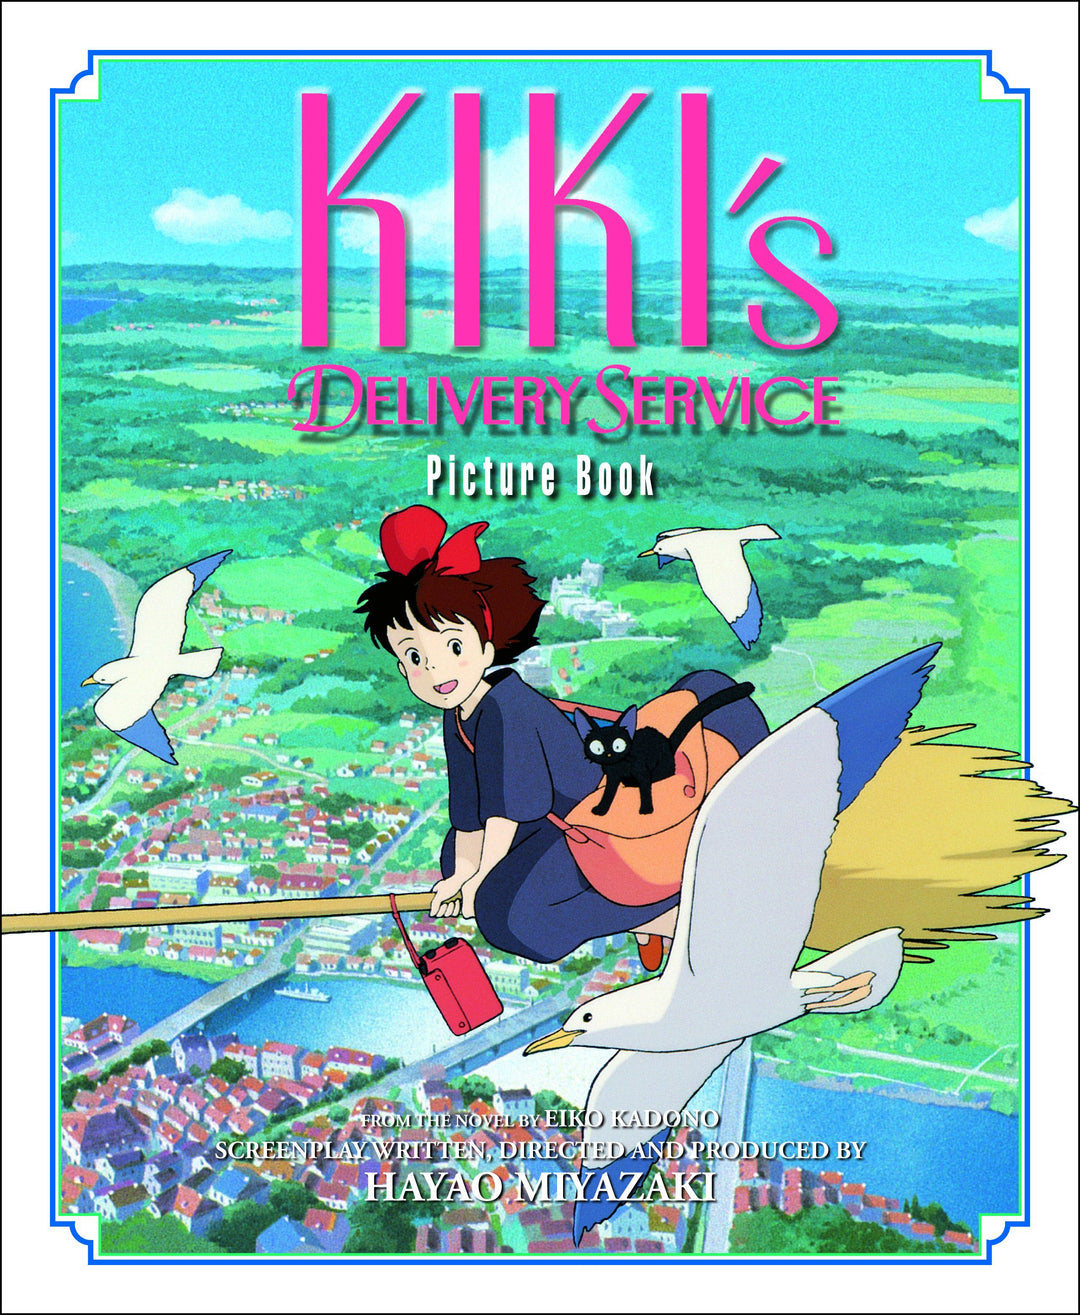 Kiki's Delivery Service Picture Book - Manga Mate